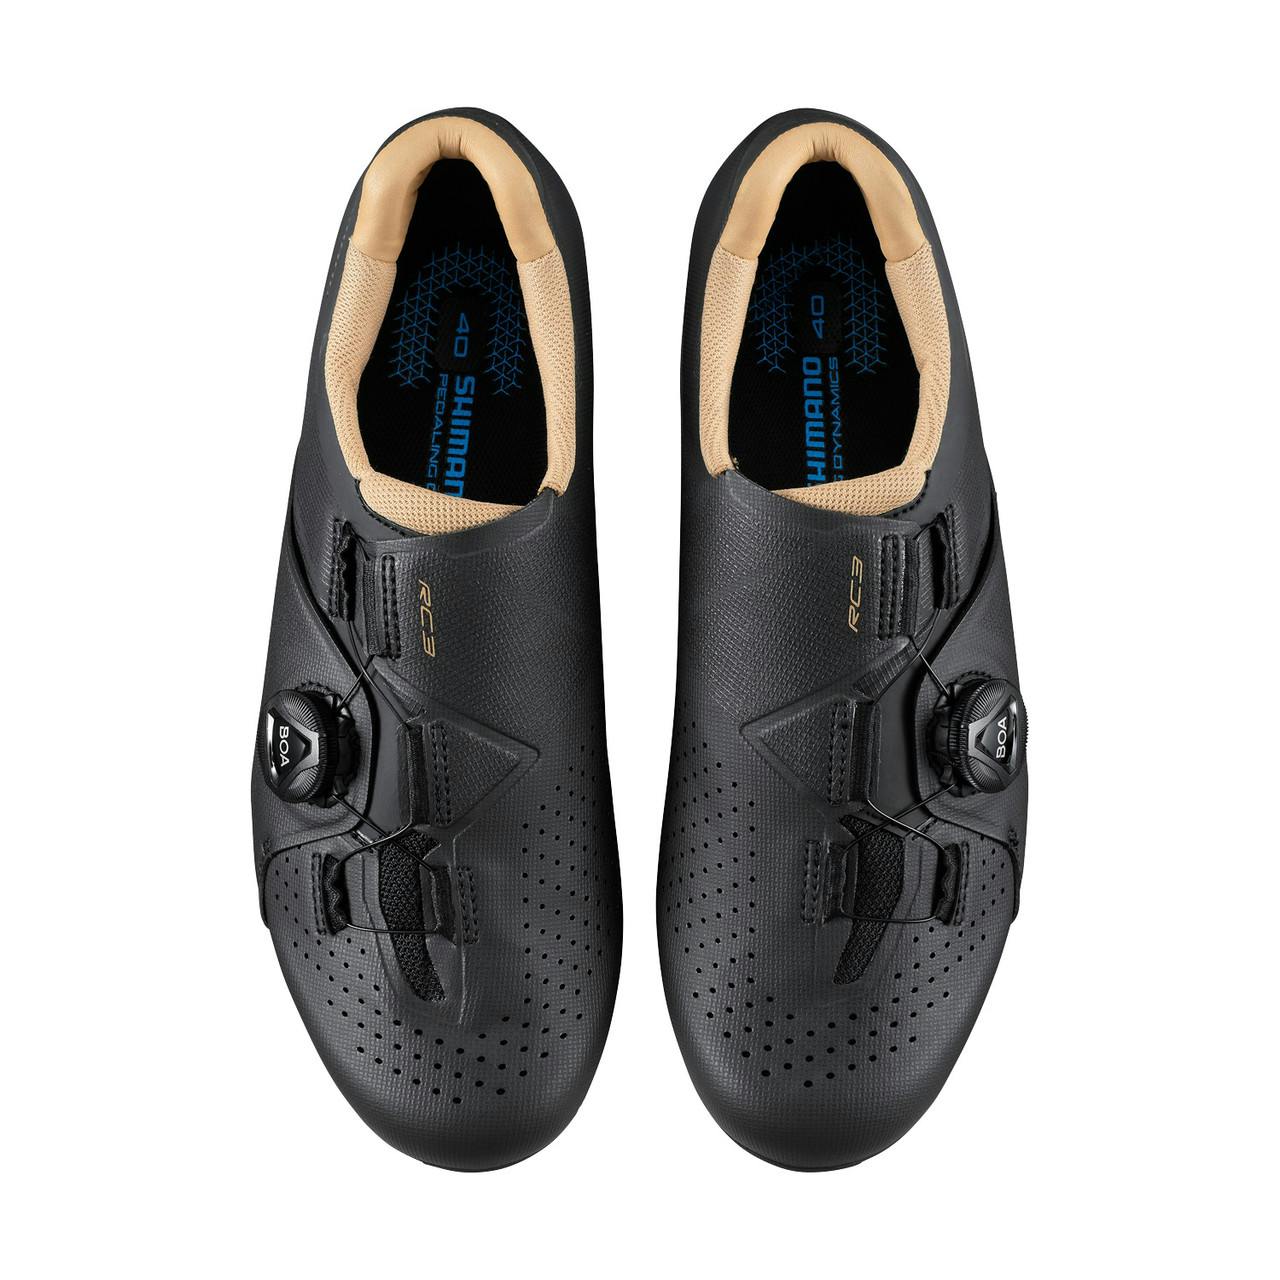 SH-RC3 Cycling Shoes Black